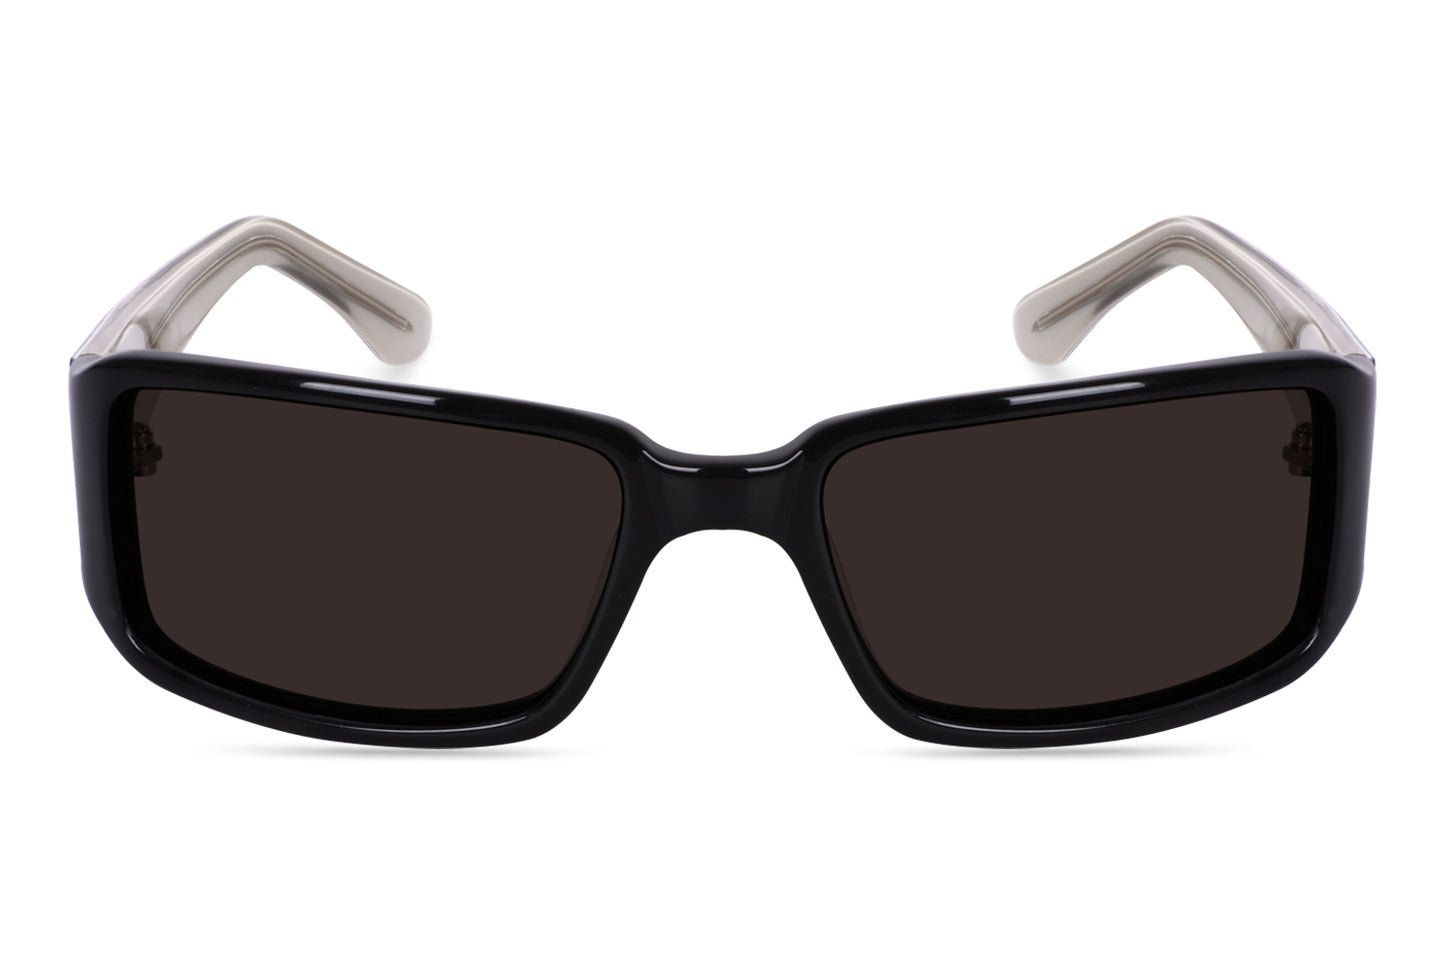 square-sunglasses